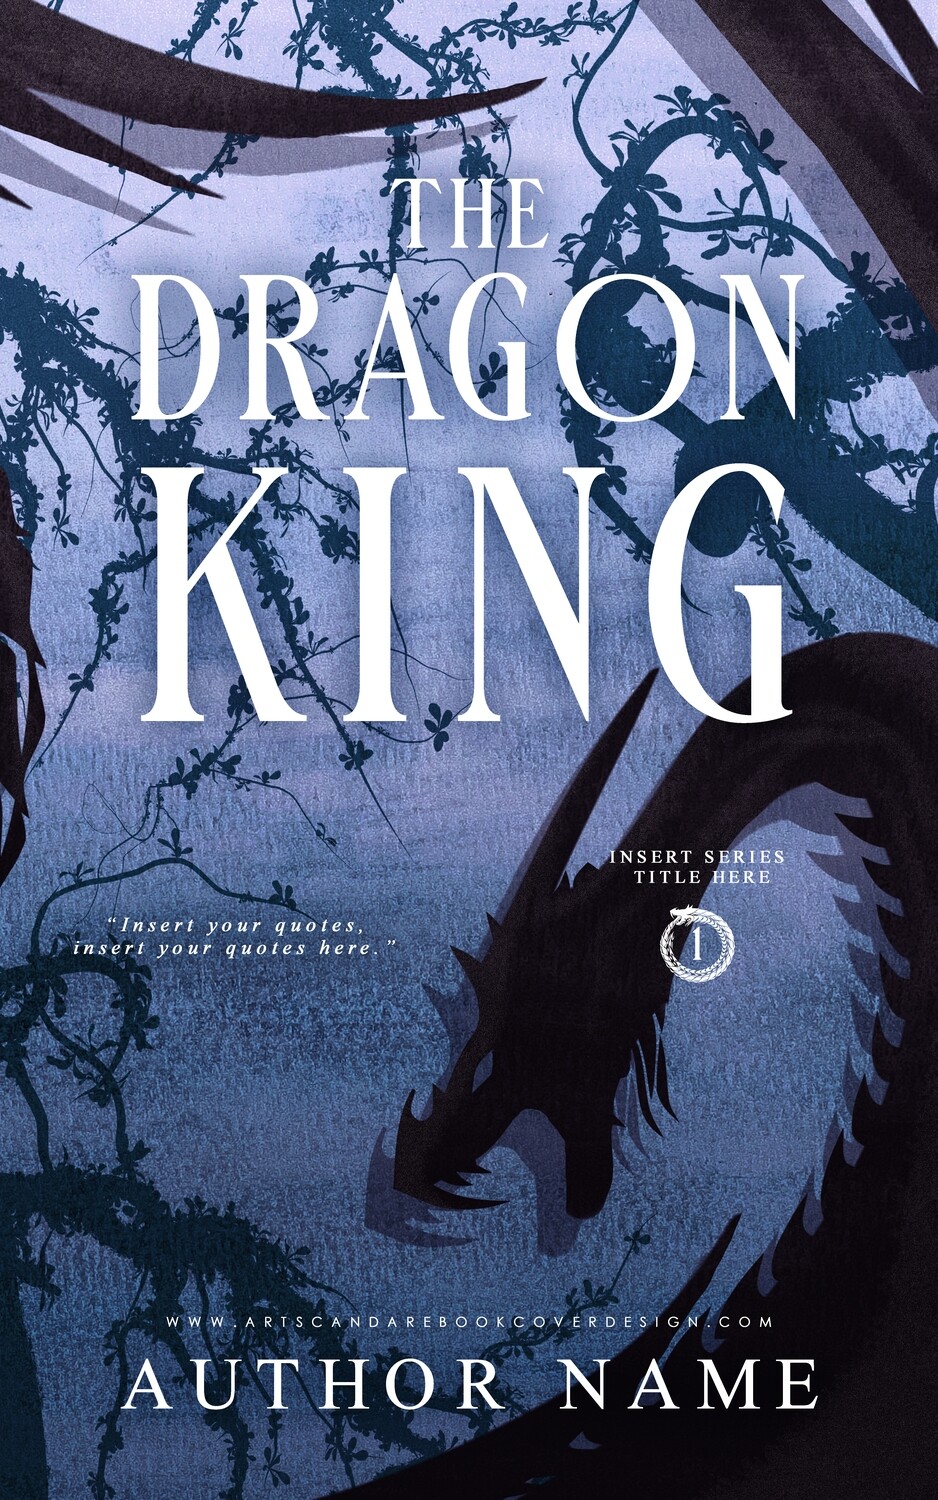 Ebook: The Dragon King